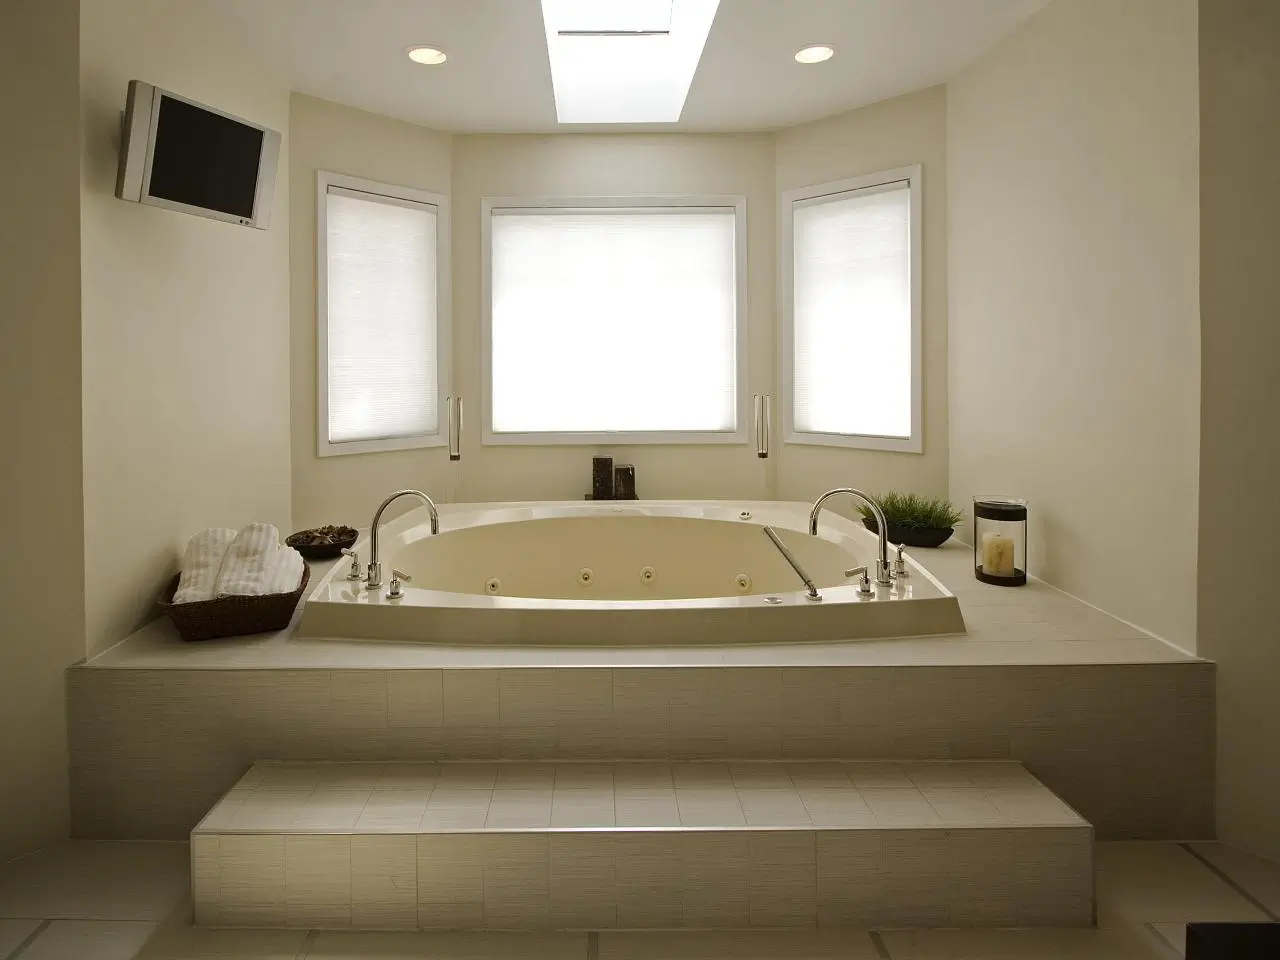 Kích thước bồn tắm nằm size lớn tiêu chuẩn phù hợp với diện tích phòng lớn